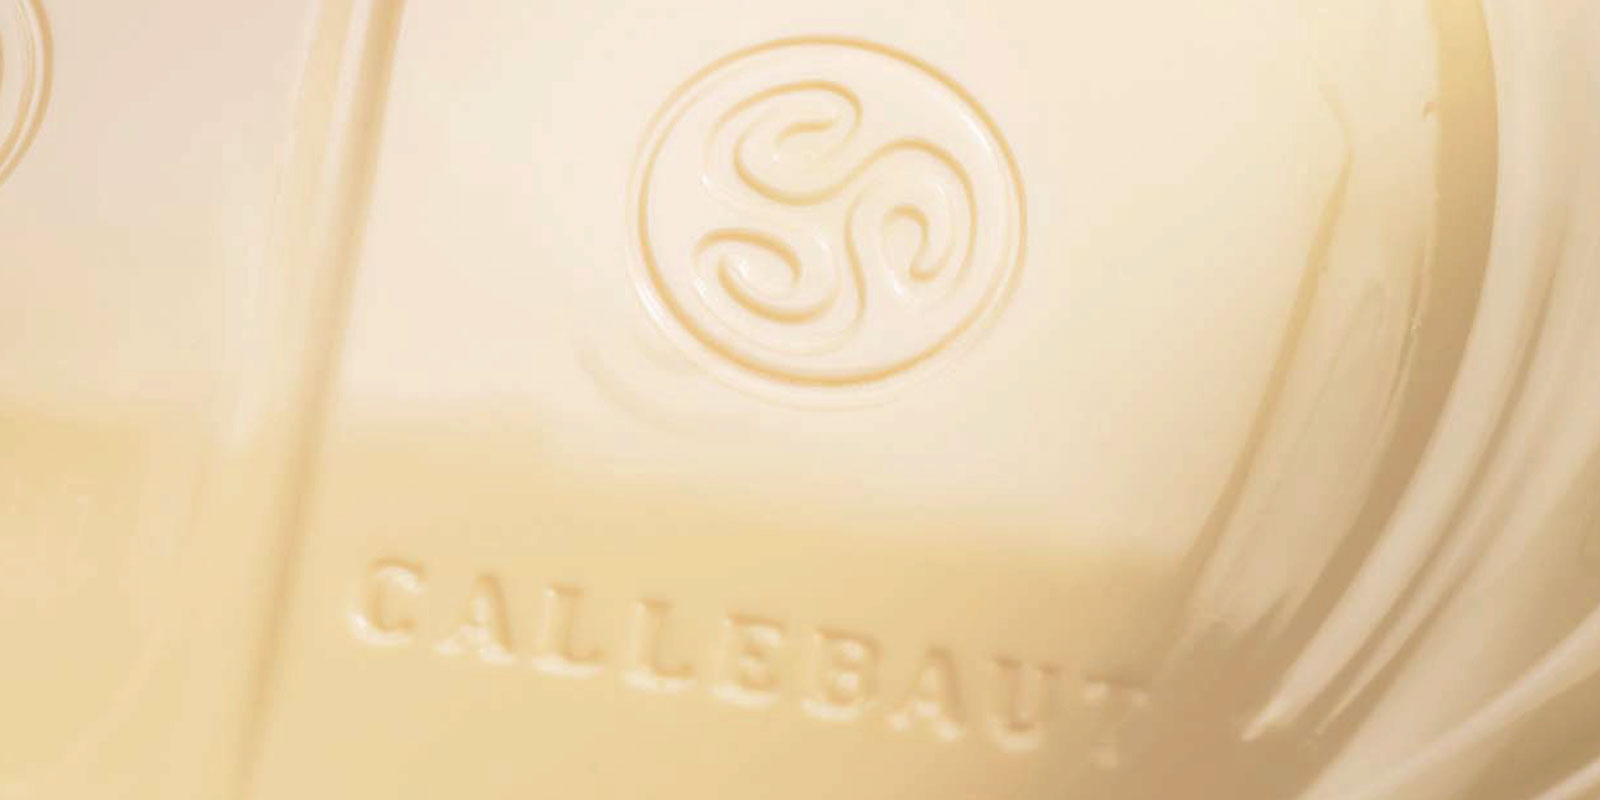 Bijele cokolade iz Callebauta Bijela cokolada je rezultat mijesanja kakao putera, mlijeka u prahu i secera. Omjer mijesanja ovih sastojaka - na primjer vanilin, vanilija ili lecitin - odreduje okus krajnjeg proizvoda.